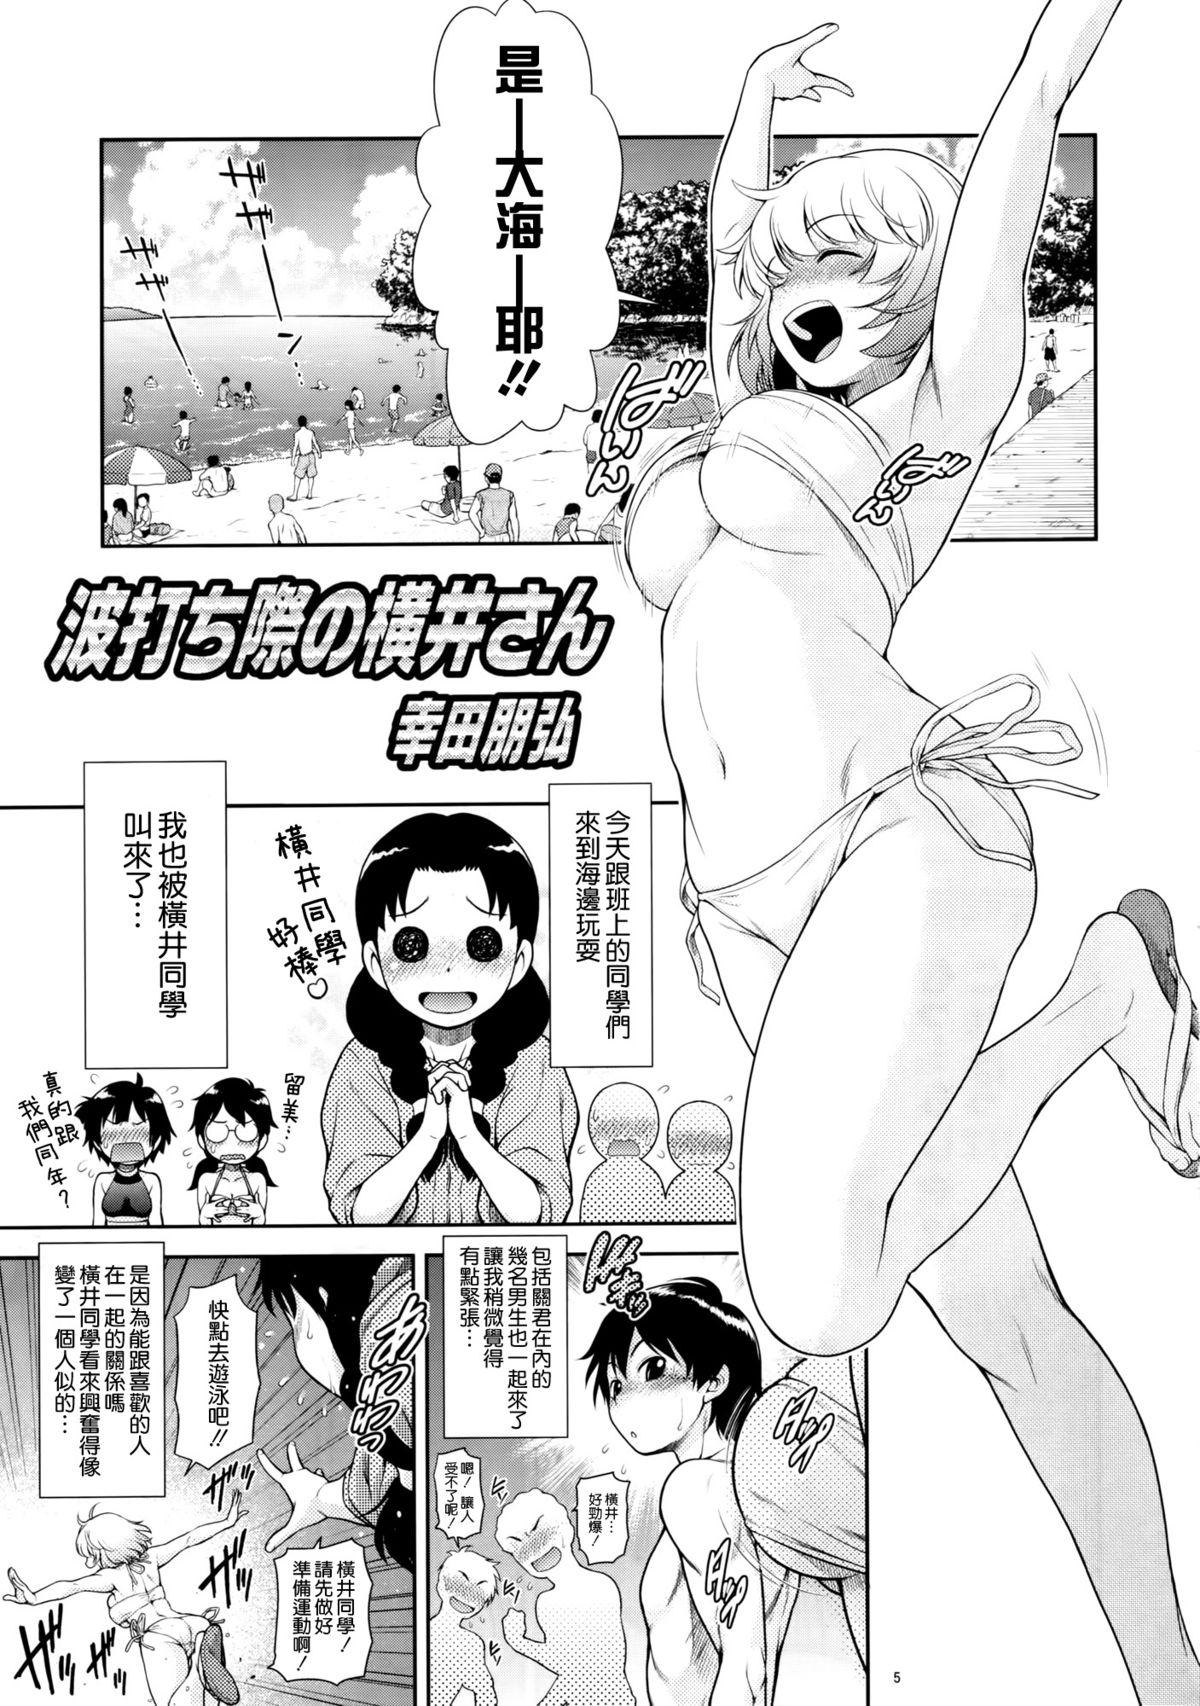 Stretch Tonari no Y-san 4jikanme - Tonari no seki-kun Bisexual - Page 5